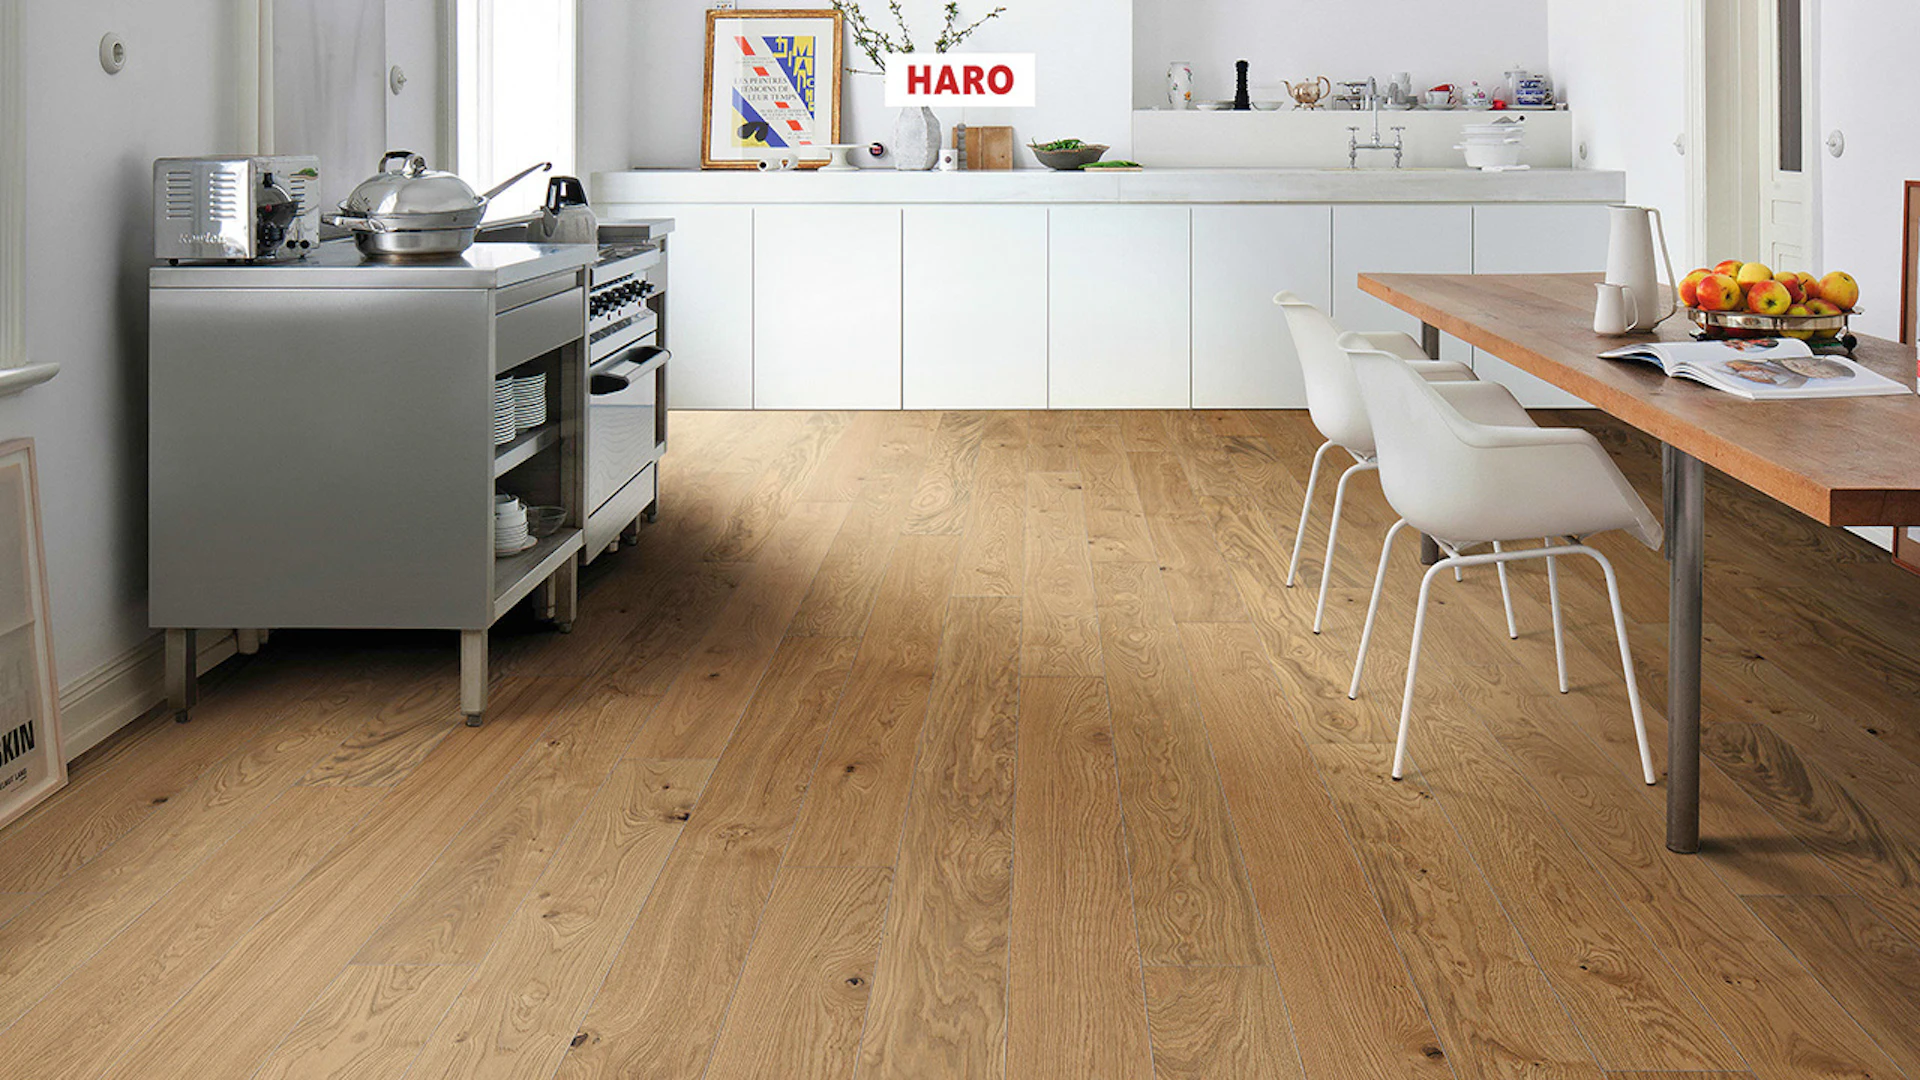 Haro Parquet Flooring - Series 4000 NF Stab LA Maxim 4V naturaLin plus Oak Markant (540986)